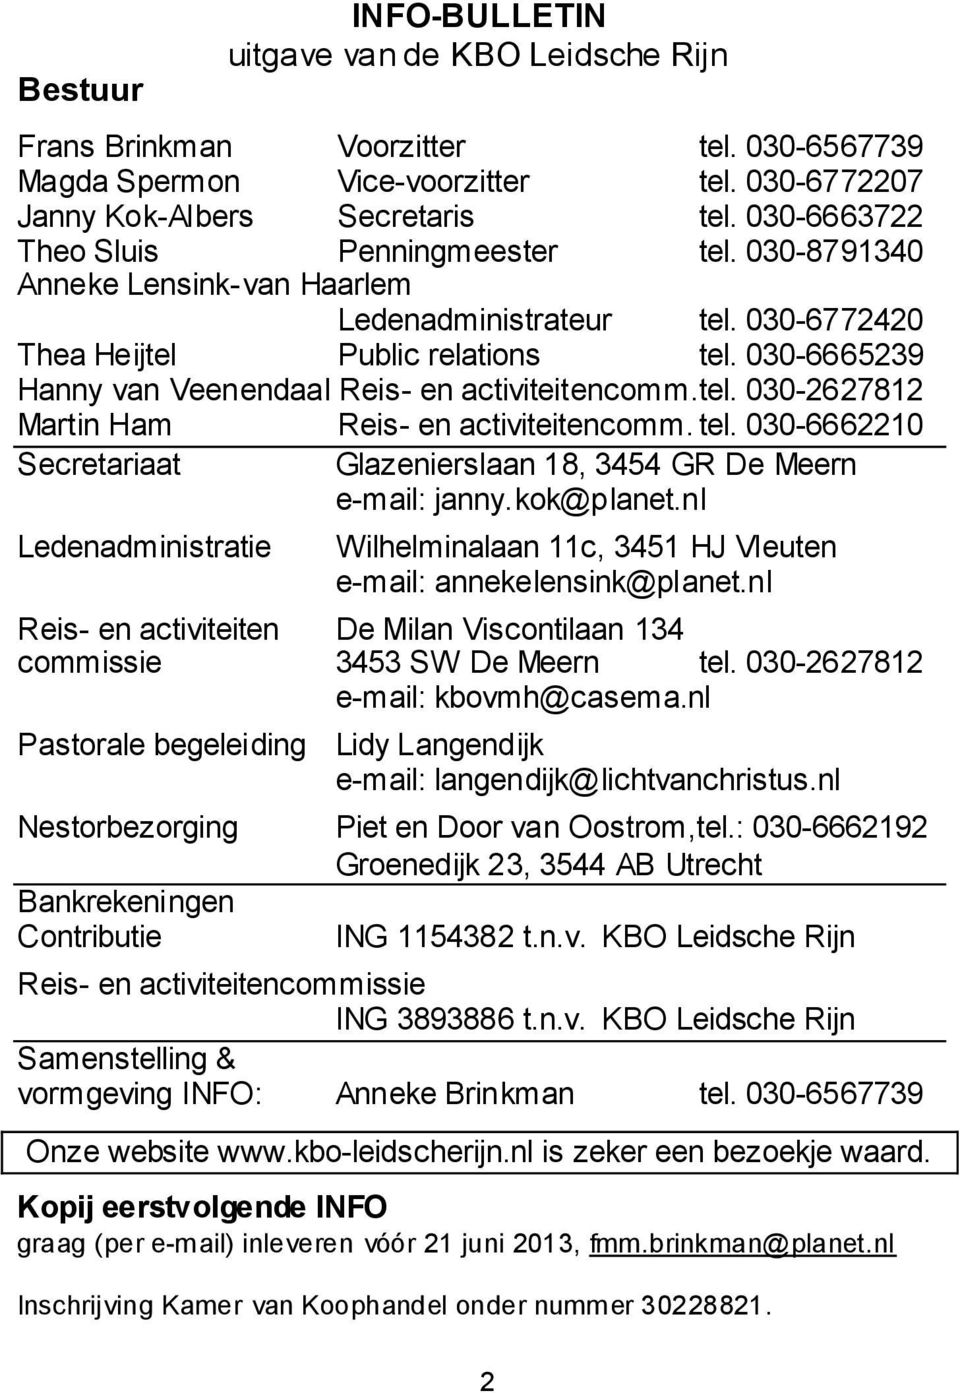 030-6665239 Hanny van Veenendaal Reis- en activiteitencomm. tel. 030-2627812 Martin Ham Reis- en activiteitencomm. tel. 030-6662210 Secretariaat Glazenierslaan 18, 3454 GR De Meern e-mail: janny.